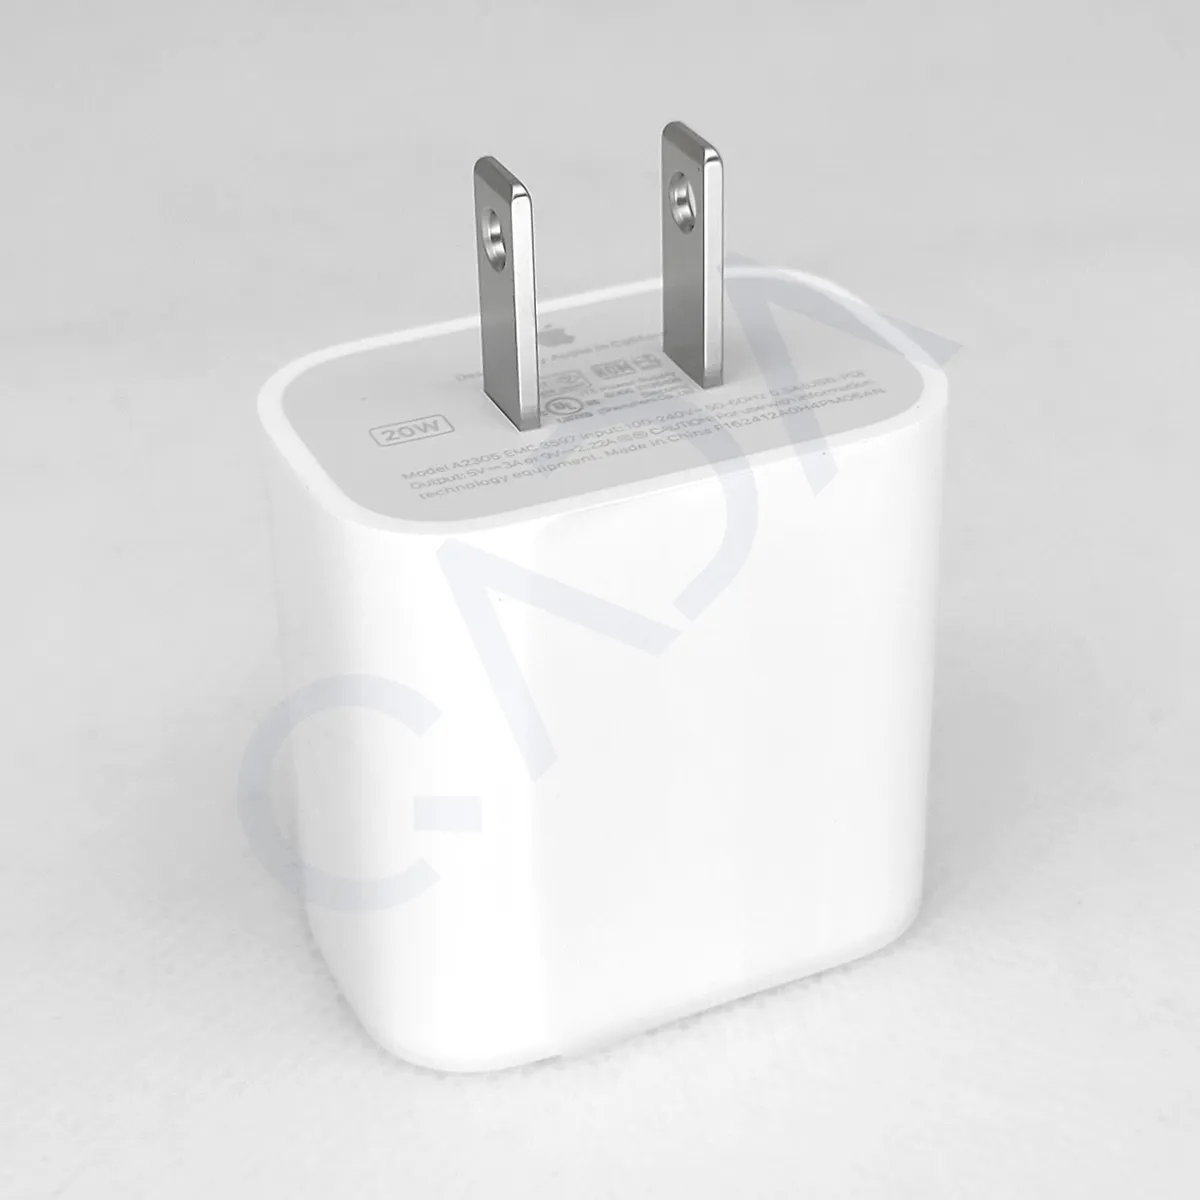 Cargador Power Adapter Usb-C iPhone iPad Para Pared